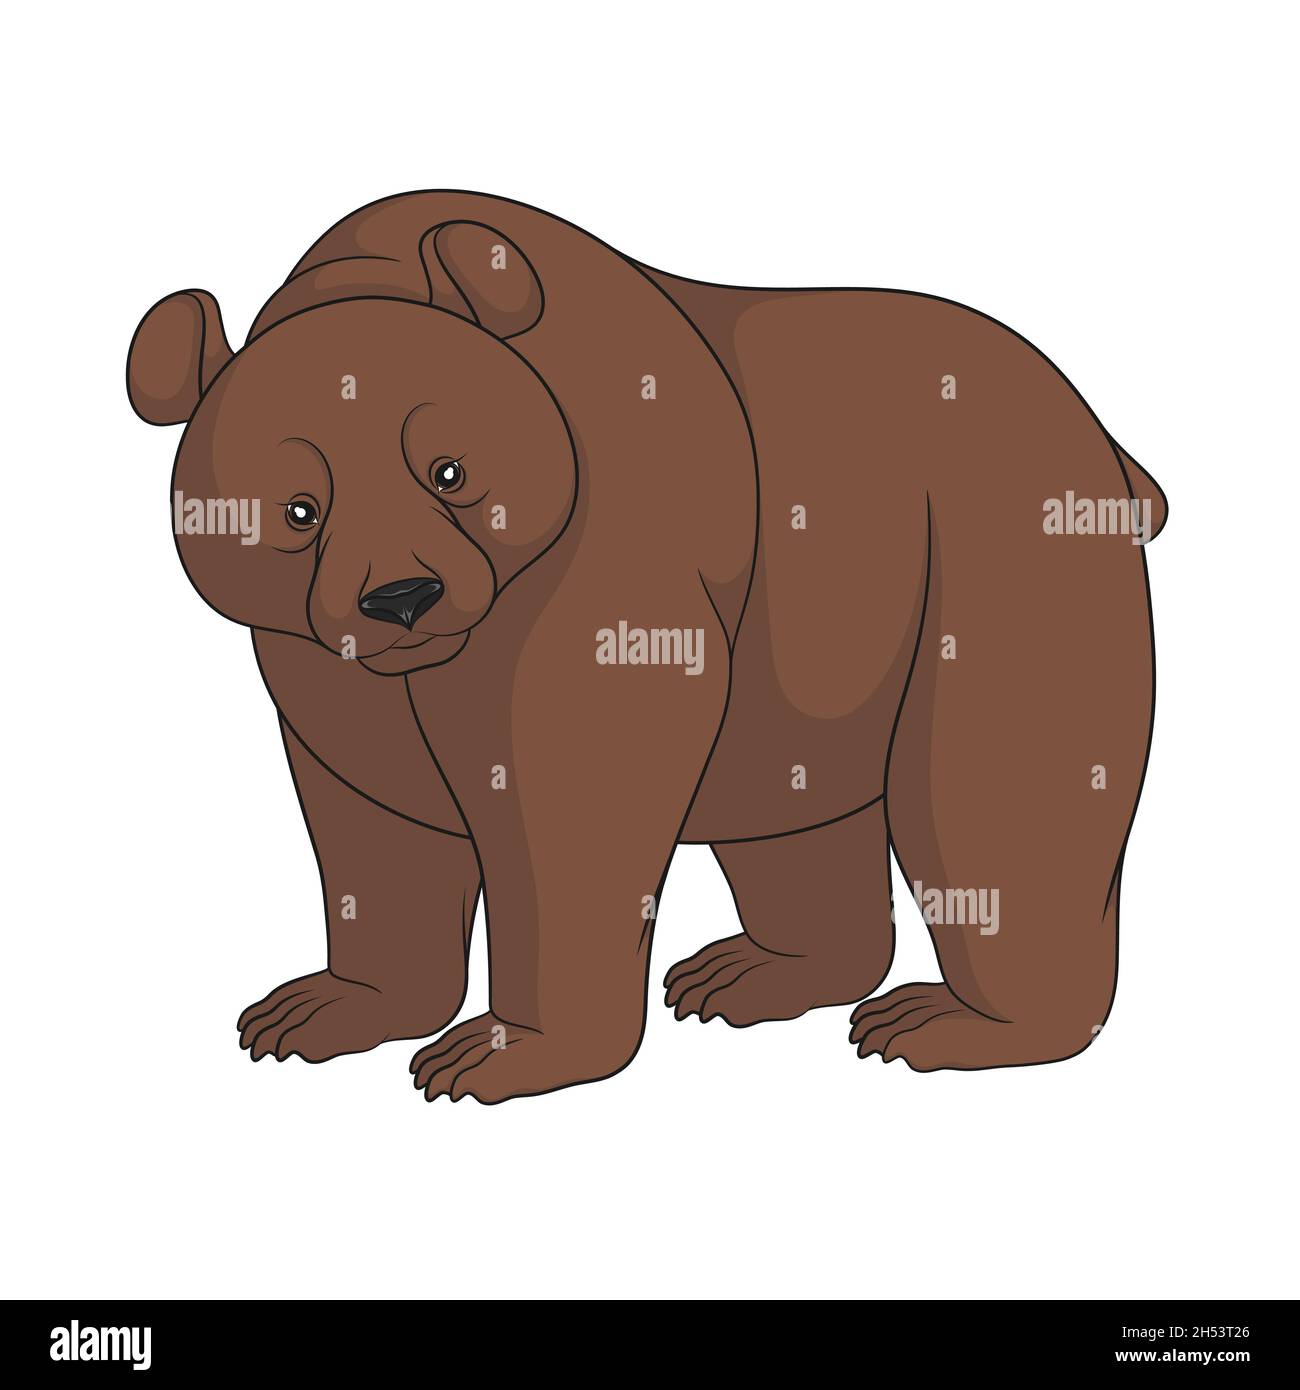 Immagine a colori di un orso bruno. Oggetto isolato su sfondo bianco. Illustrazione Vettoriale